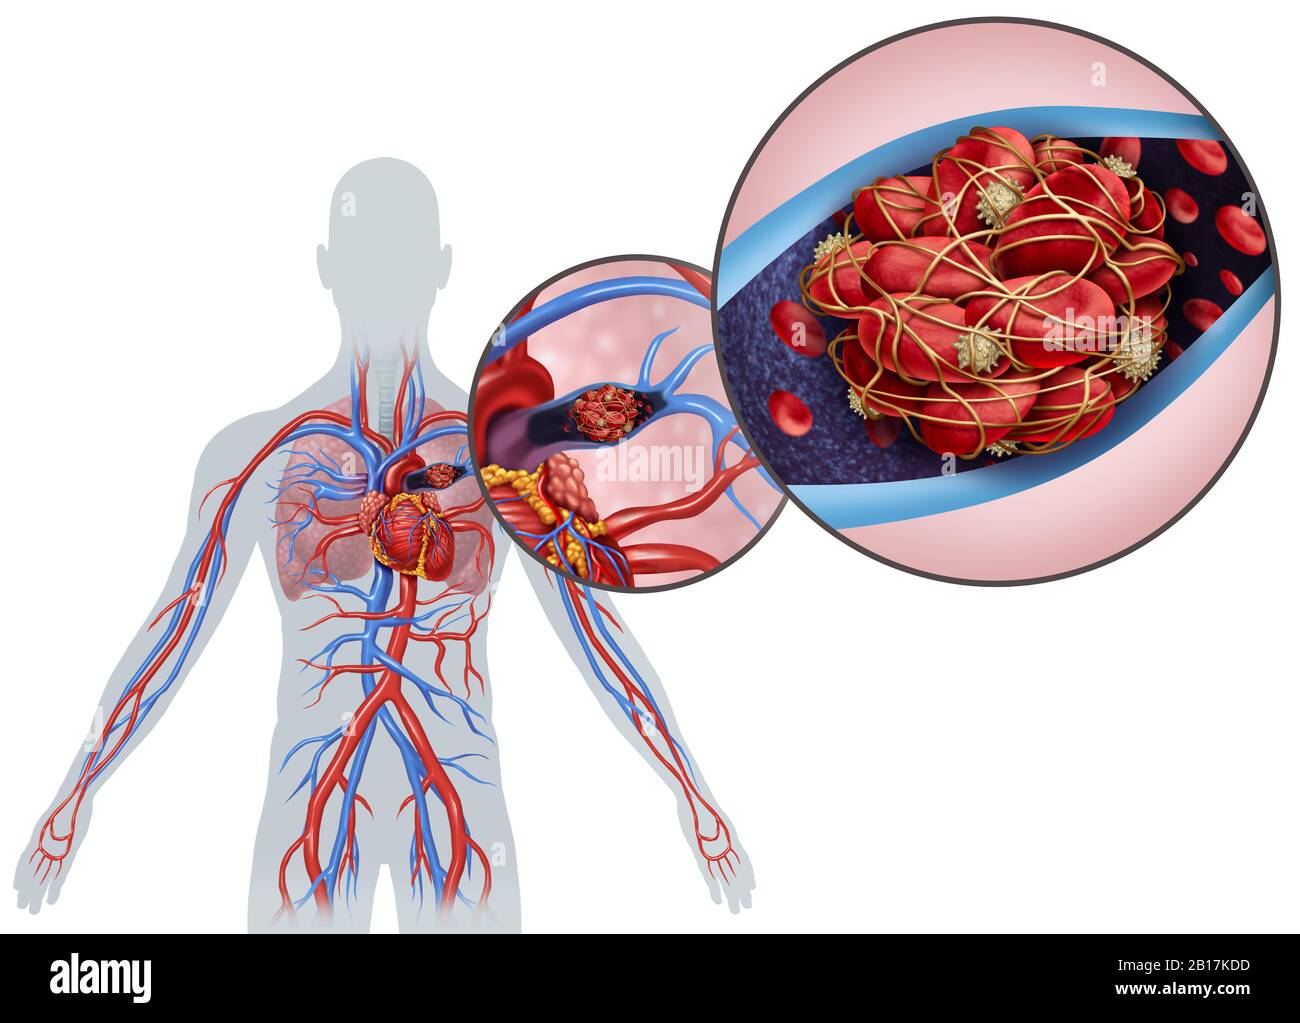 Embolismo pulmonar con coágulo sanguíneo como enfermedad con obstrucción de una arteria en los pulmones con elementos ilustrativos en 3D. Foto de stock